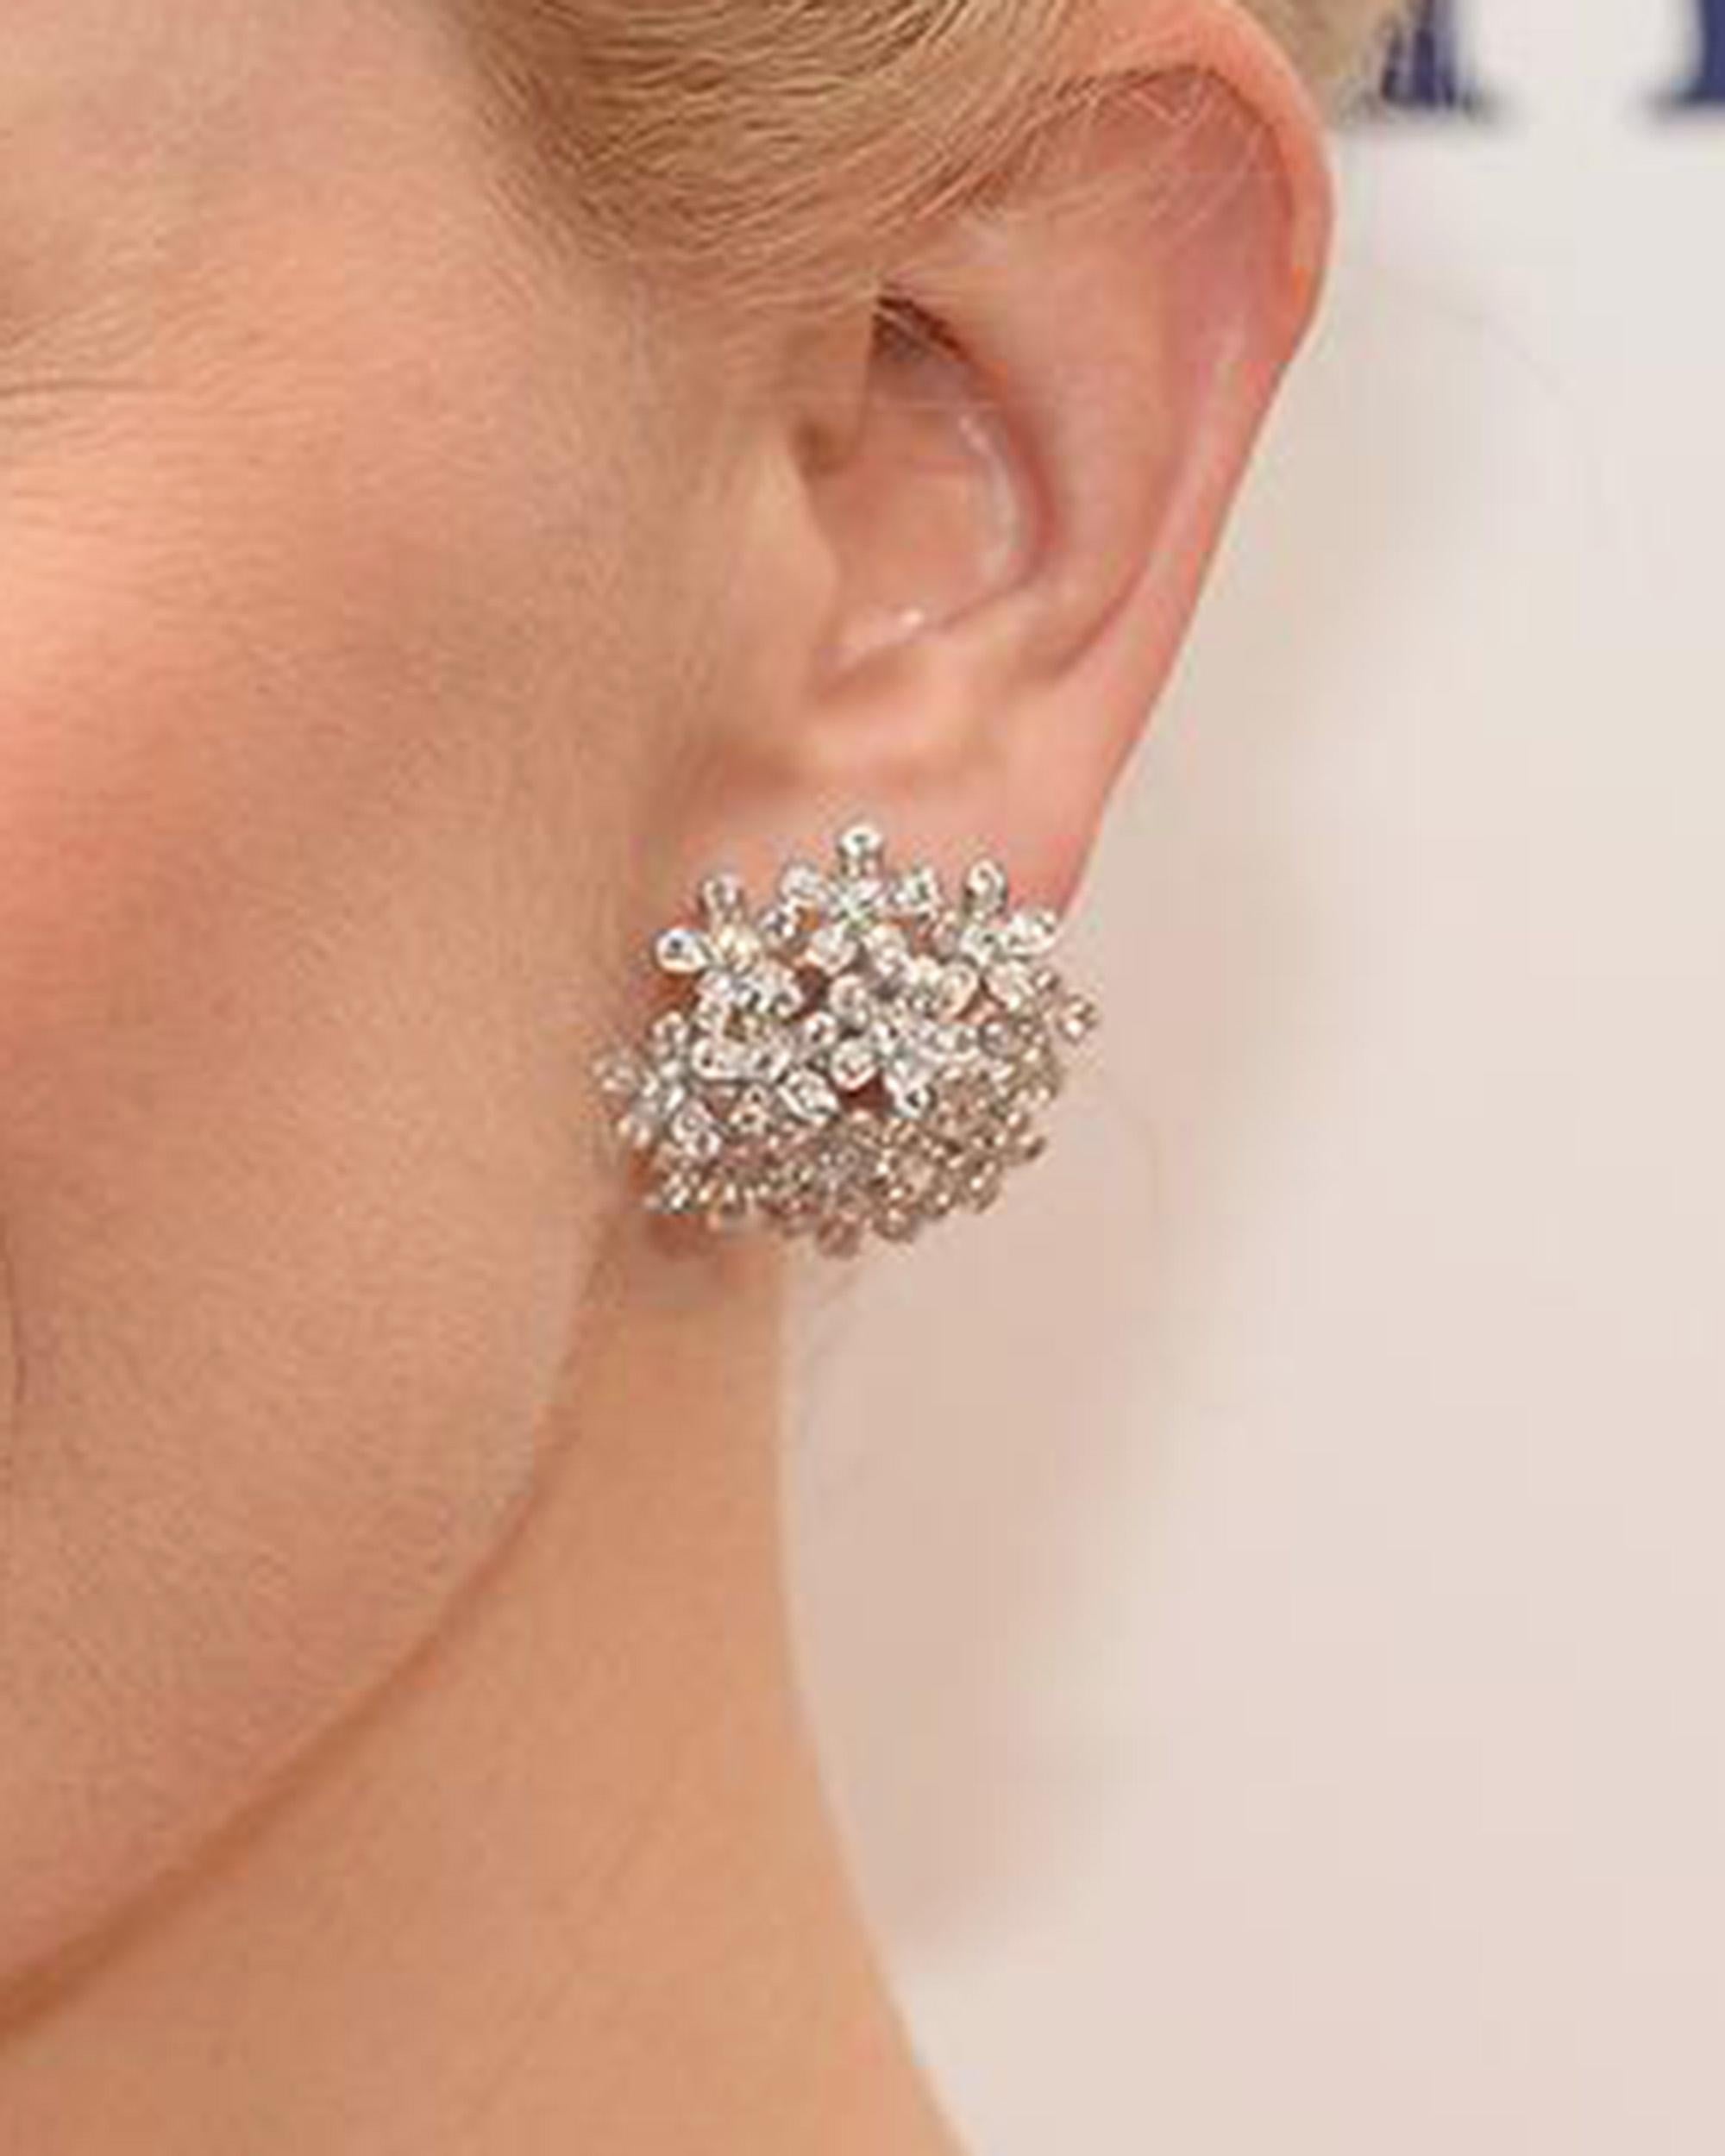 van cleef diamond earring